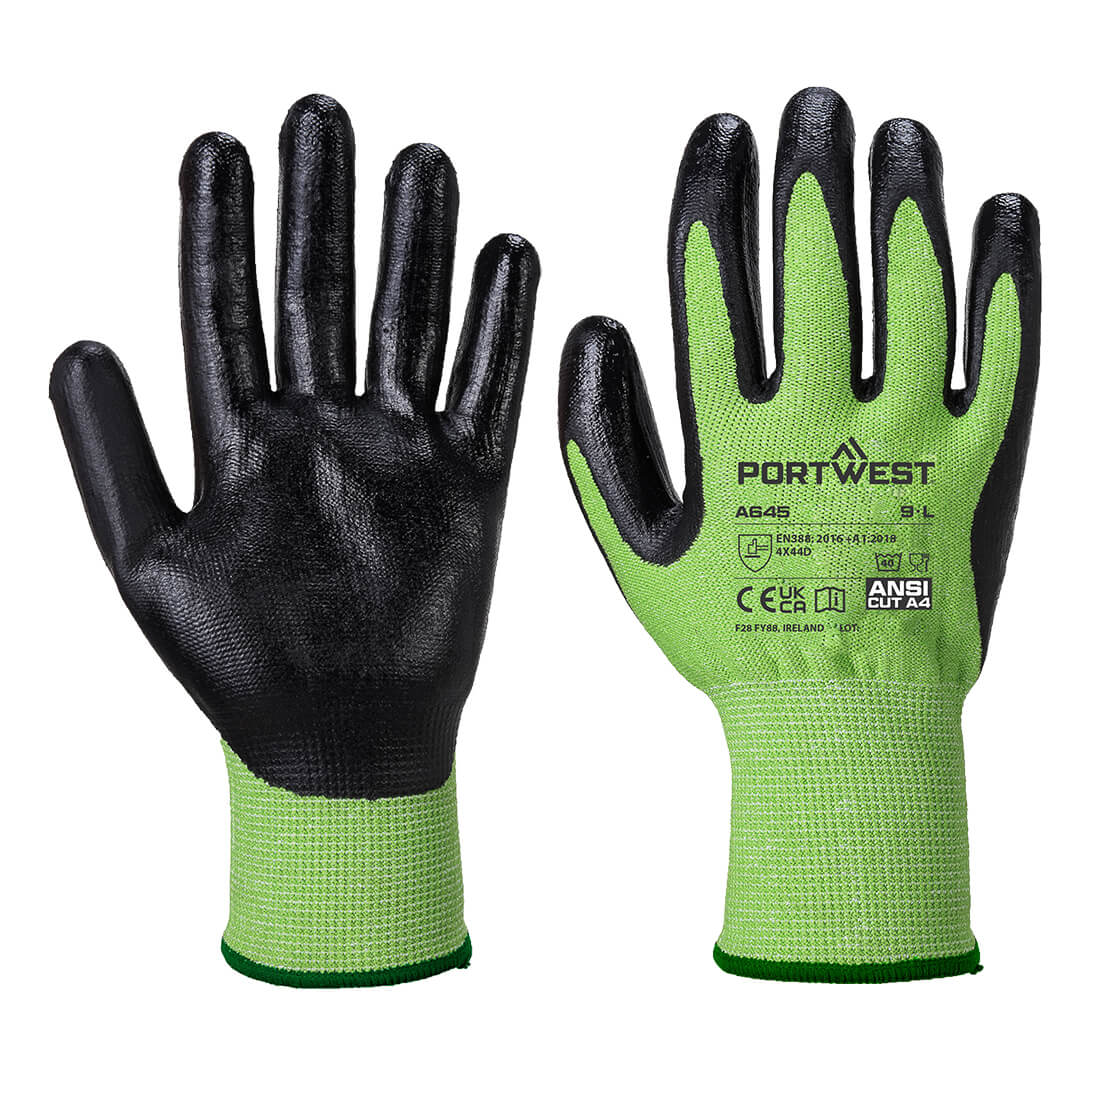 Portwest Green Cut Glove